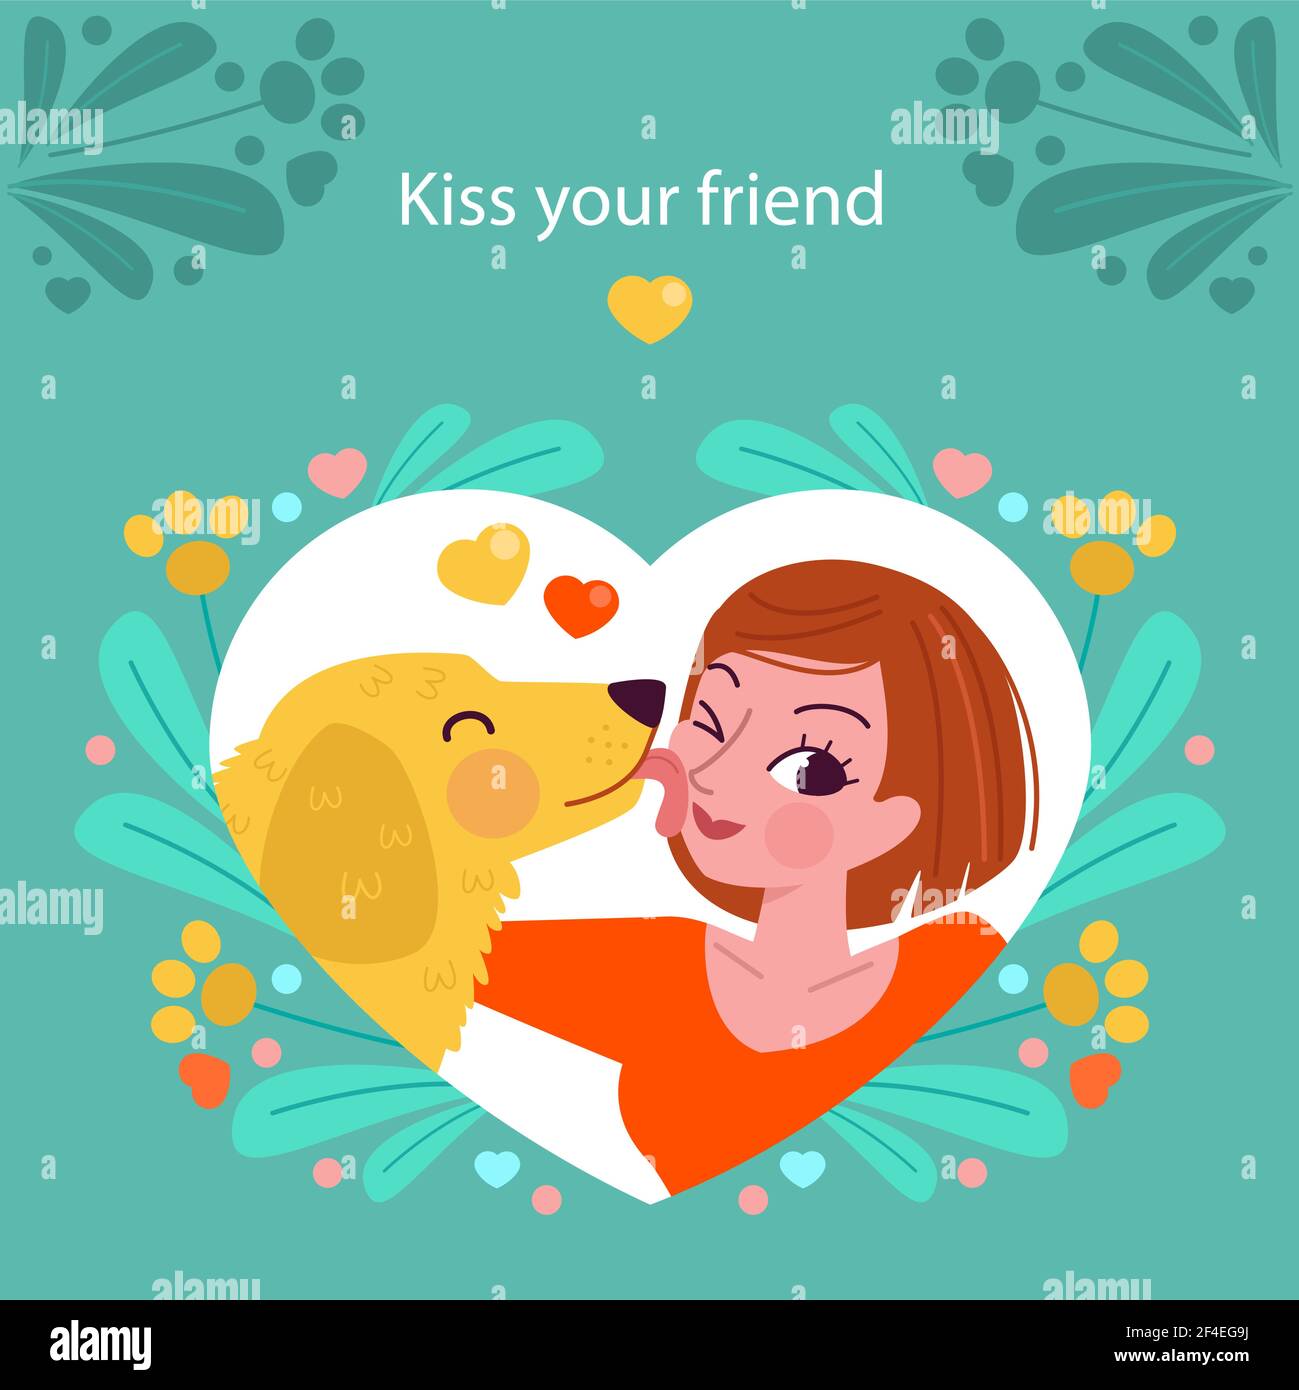 Flat international kissing day illustration Vector illustration. Stock Vector